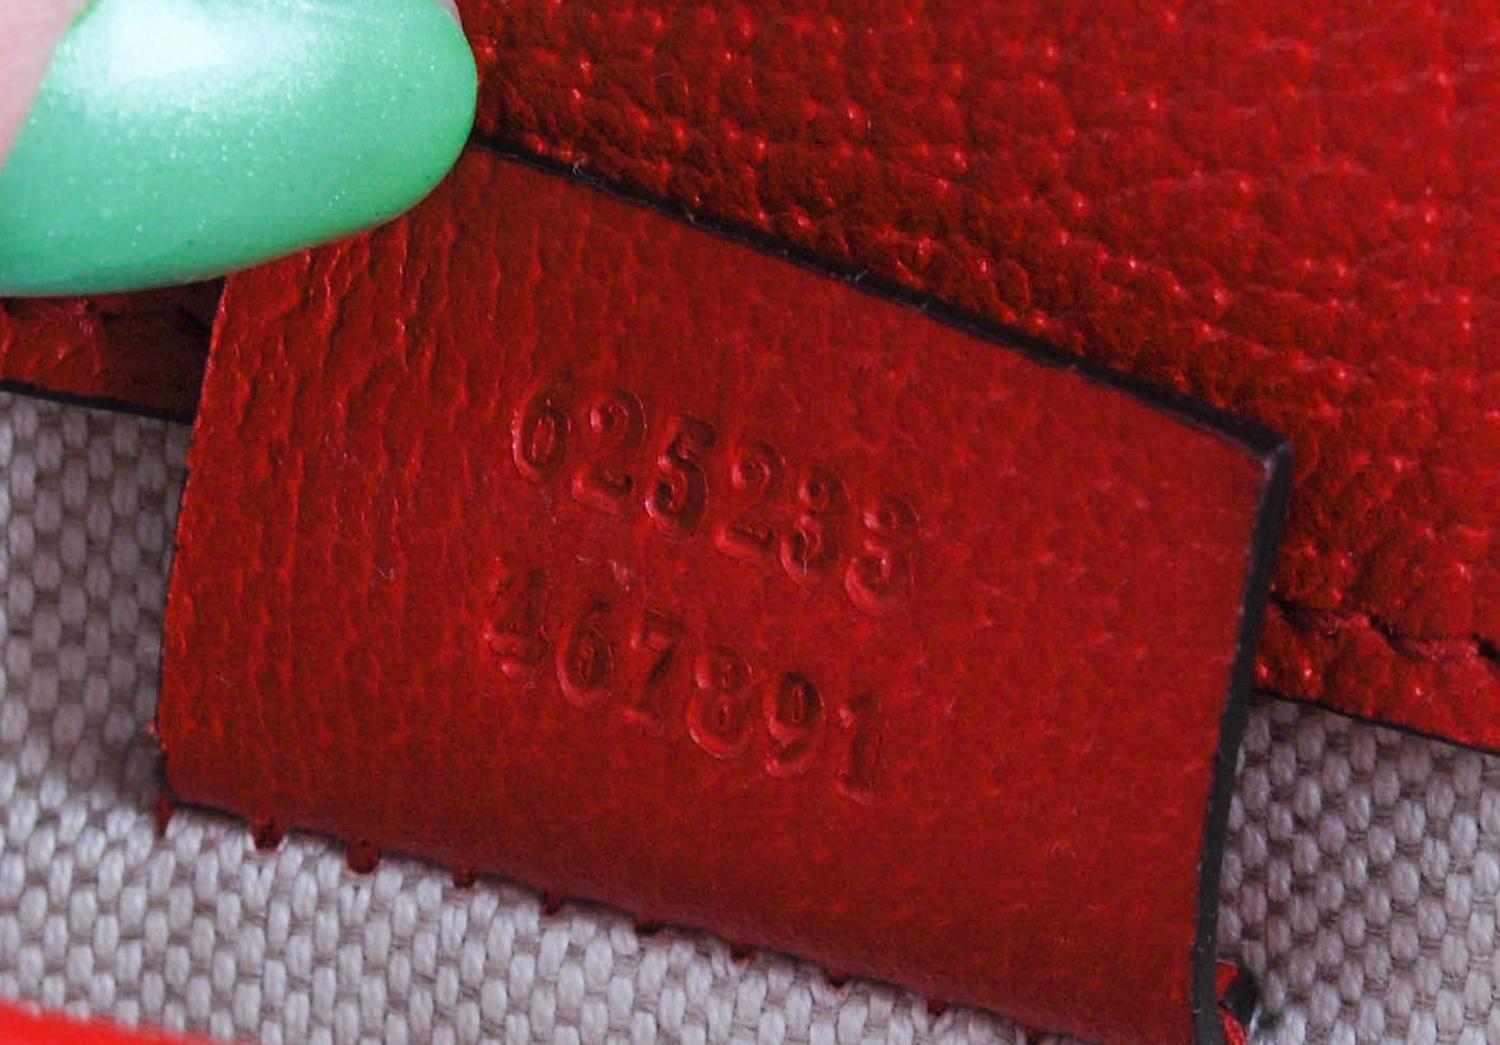 Artikel zum Verkauf ist 100% echte Gucci Monogram Frauen Gürteltasche S044
Farbe: Braun/Rot
(Eine tatsächliche Farbe kann ein wenig variieren aufgrund individueller Computer-Bildschirm Interpretation)
MATERIAL: Leder Details
Diese Tasche ist von